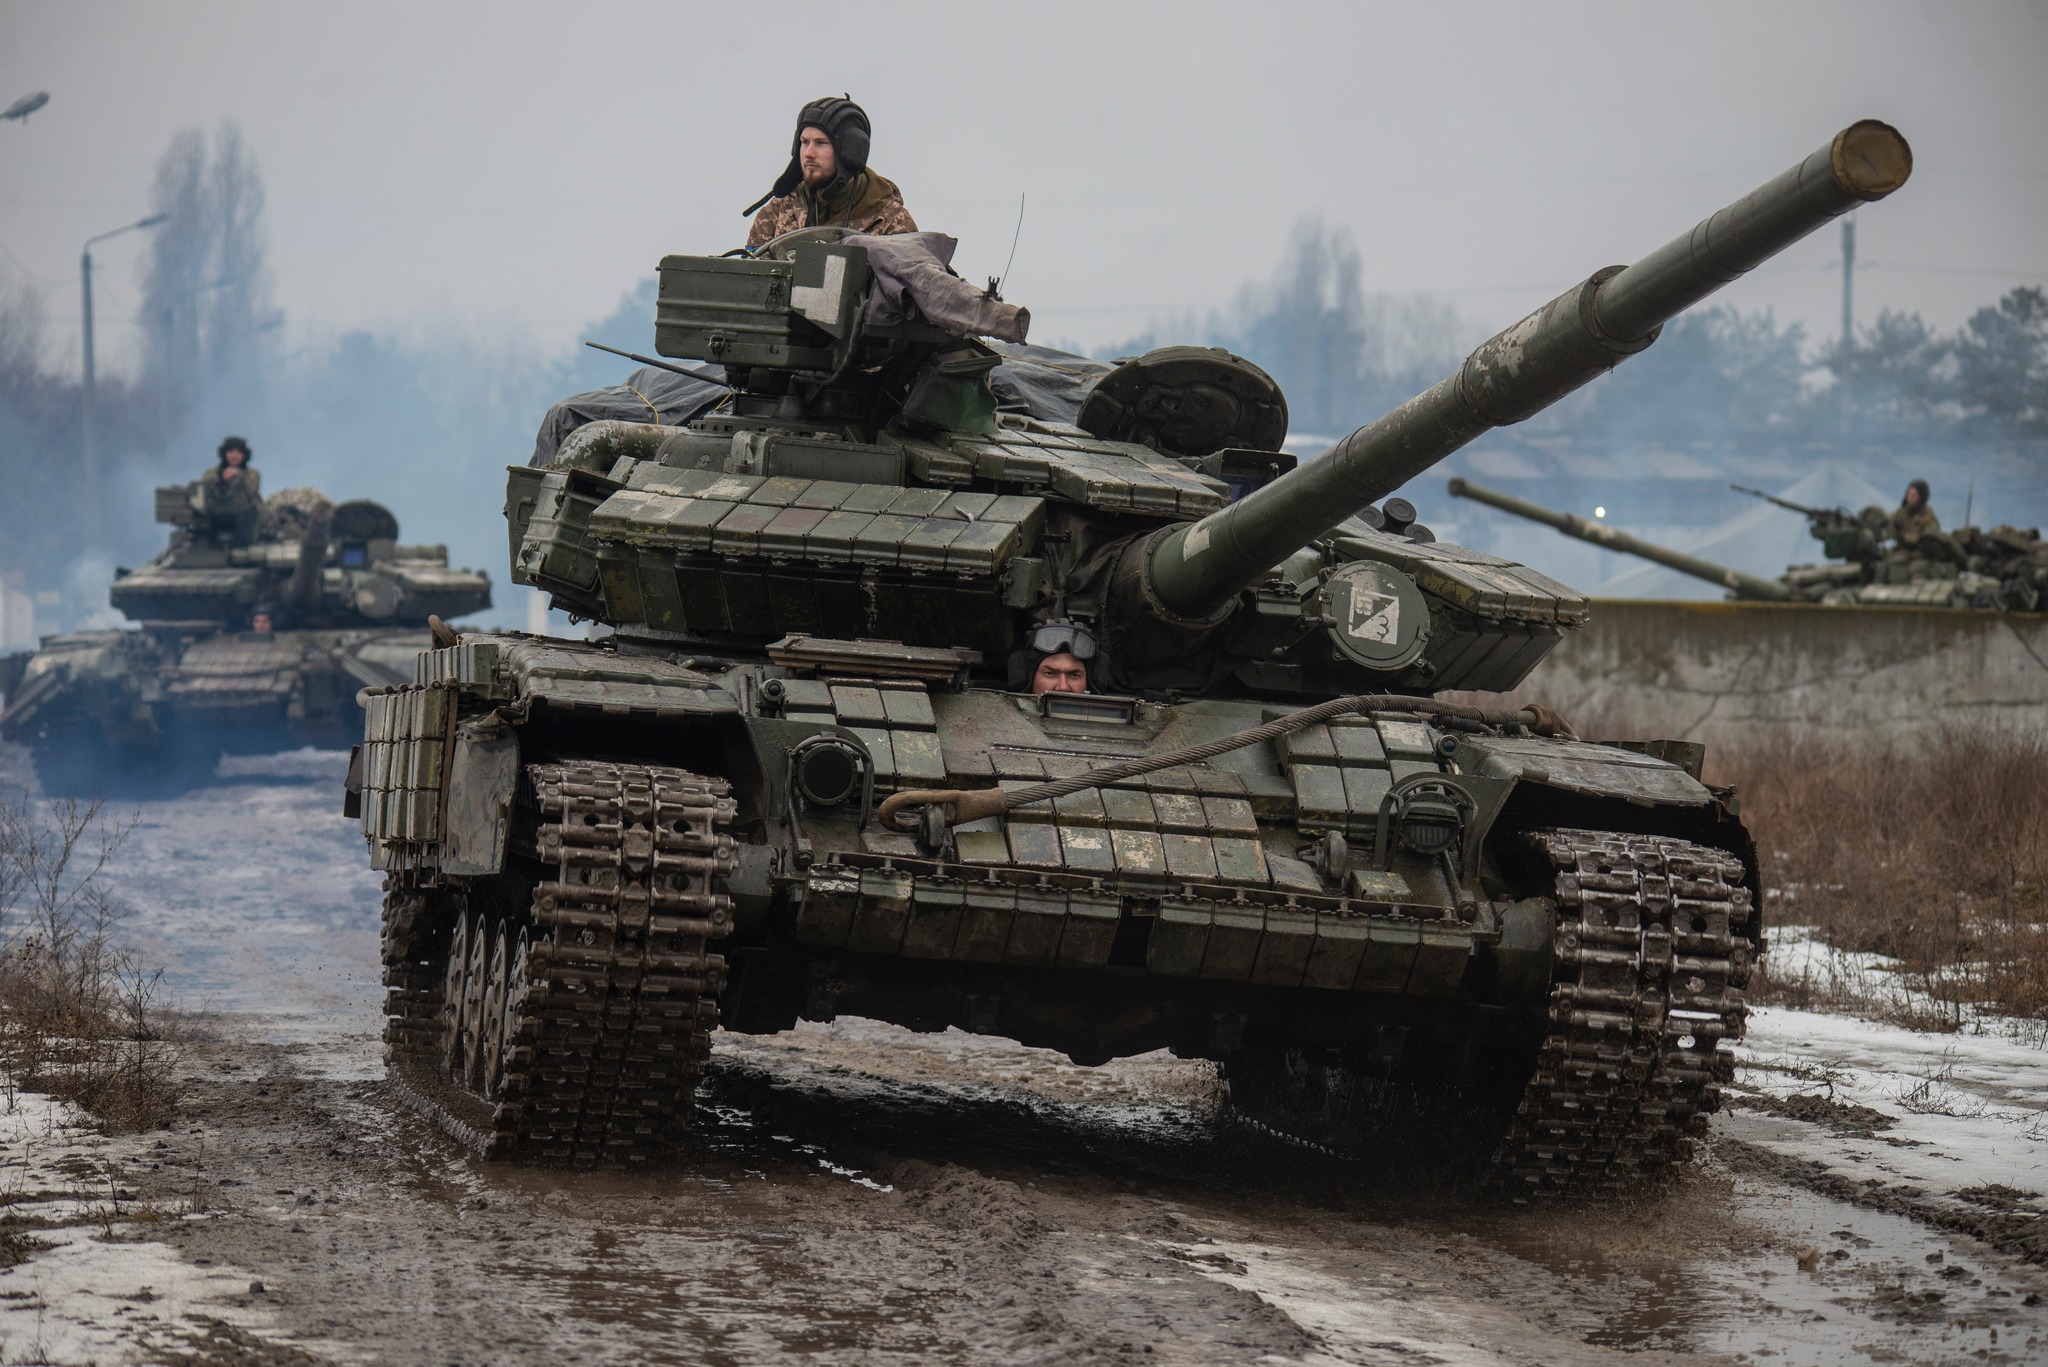 Ворог, намагаючись взяти під контроль Донеччину та Луганщину, зазнає великих втрат у живій силі